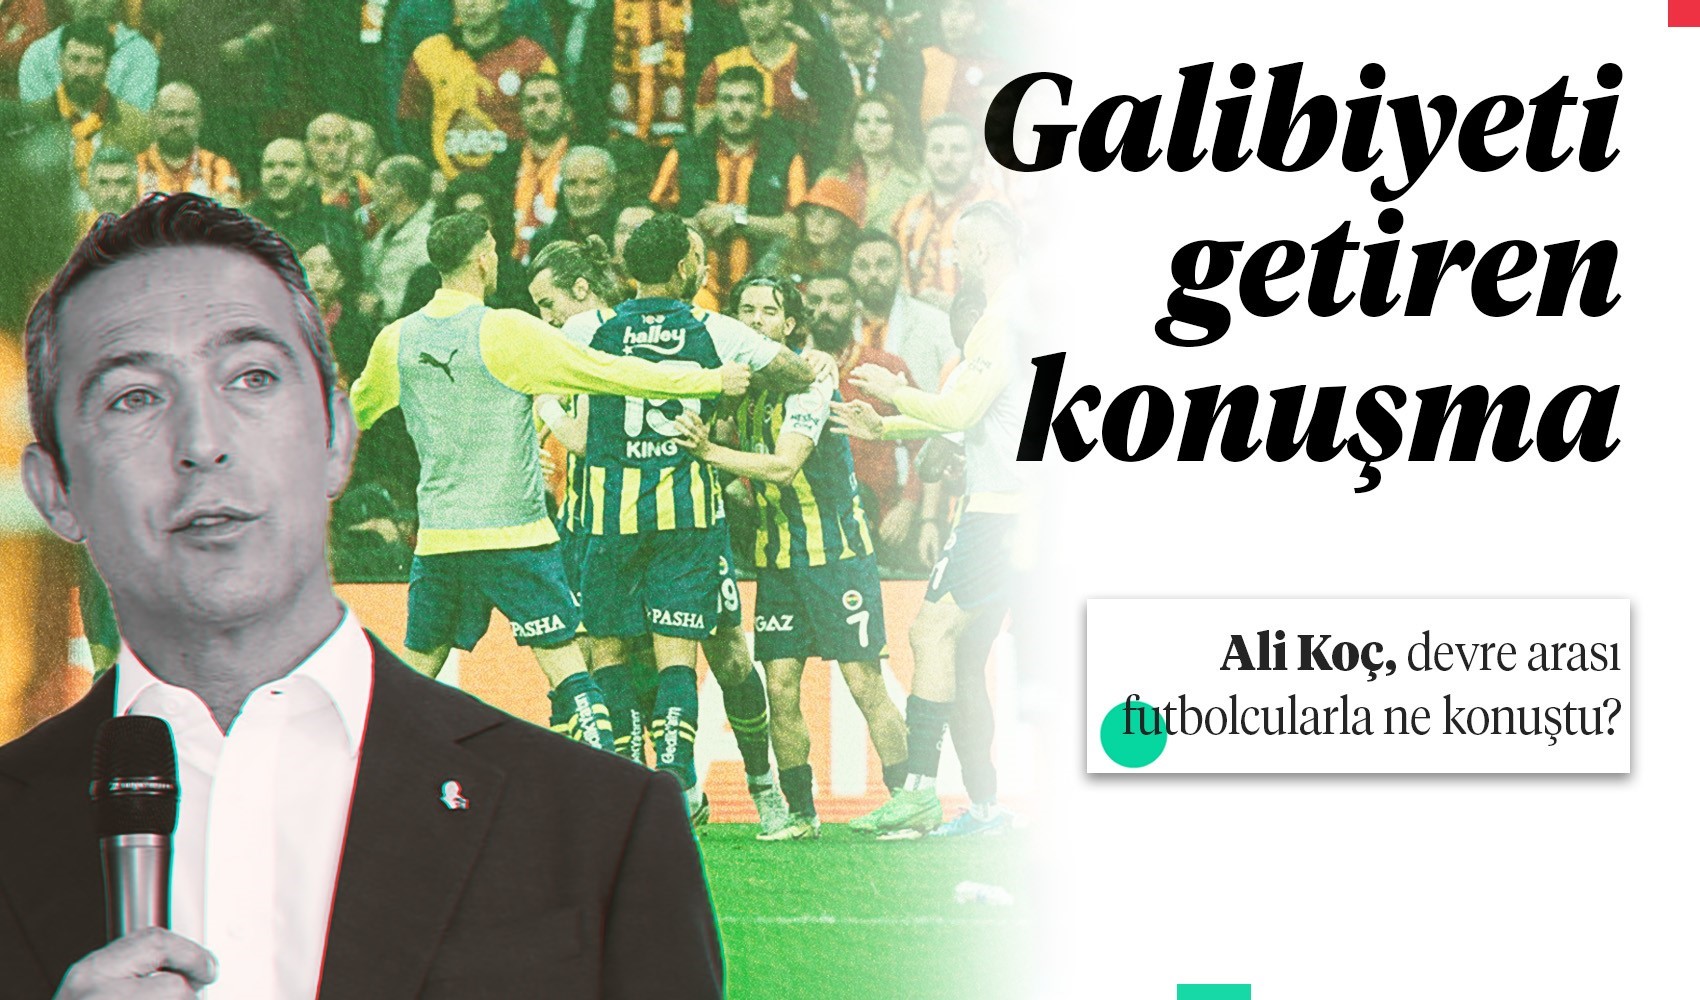 Ali Koç'un Fenerbahçe'ye galibiyeti getiren konuşması ortaya çıktı